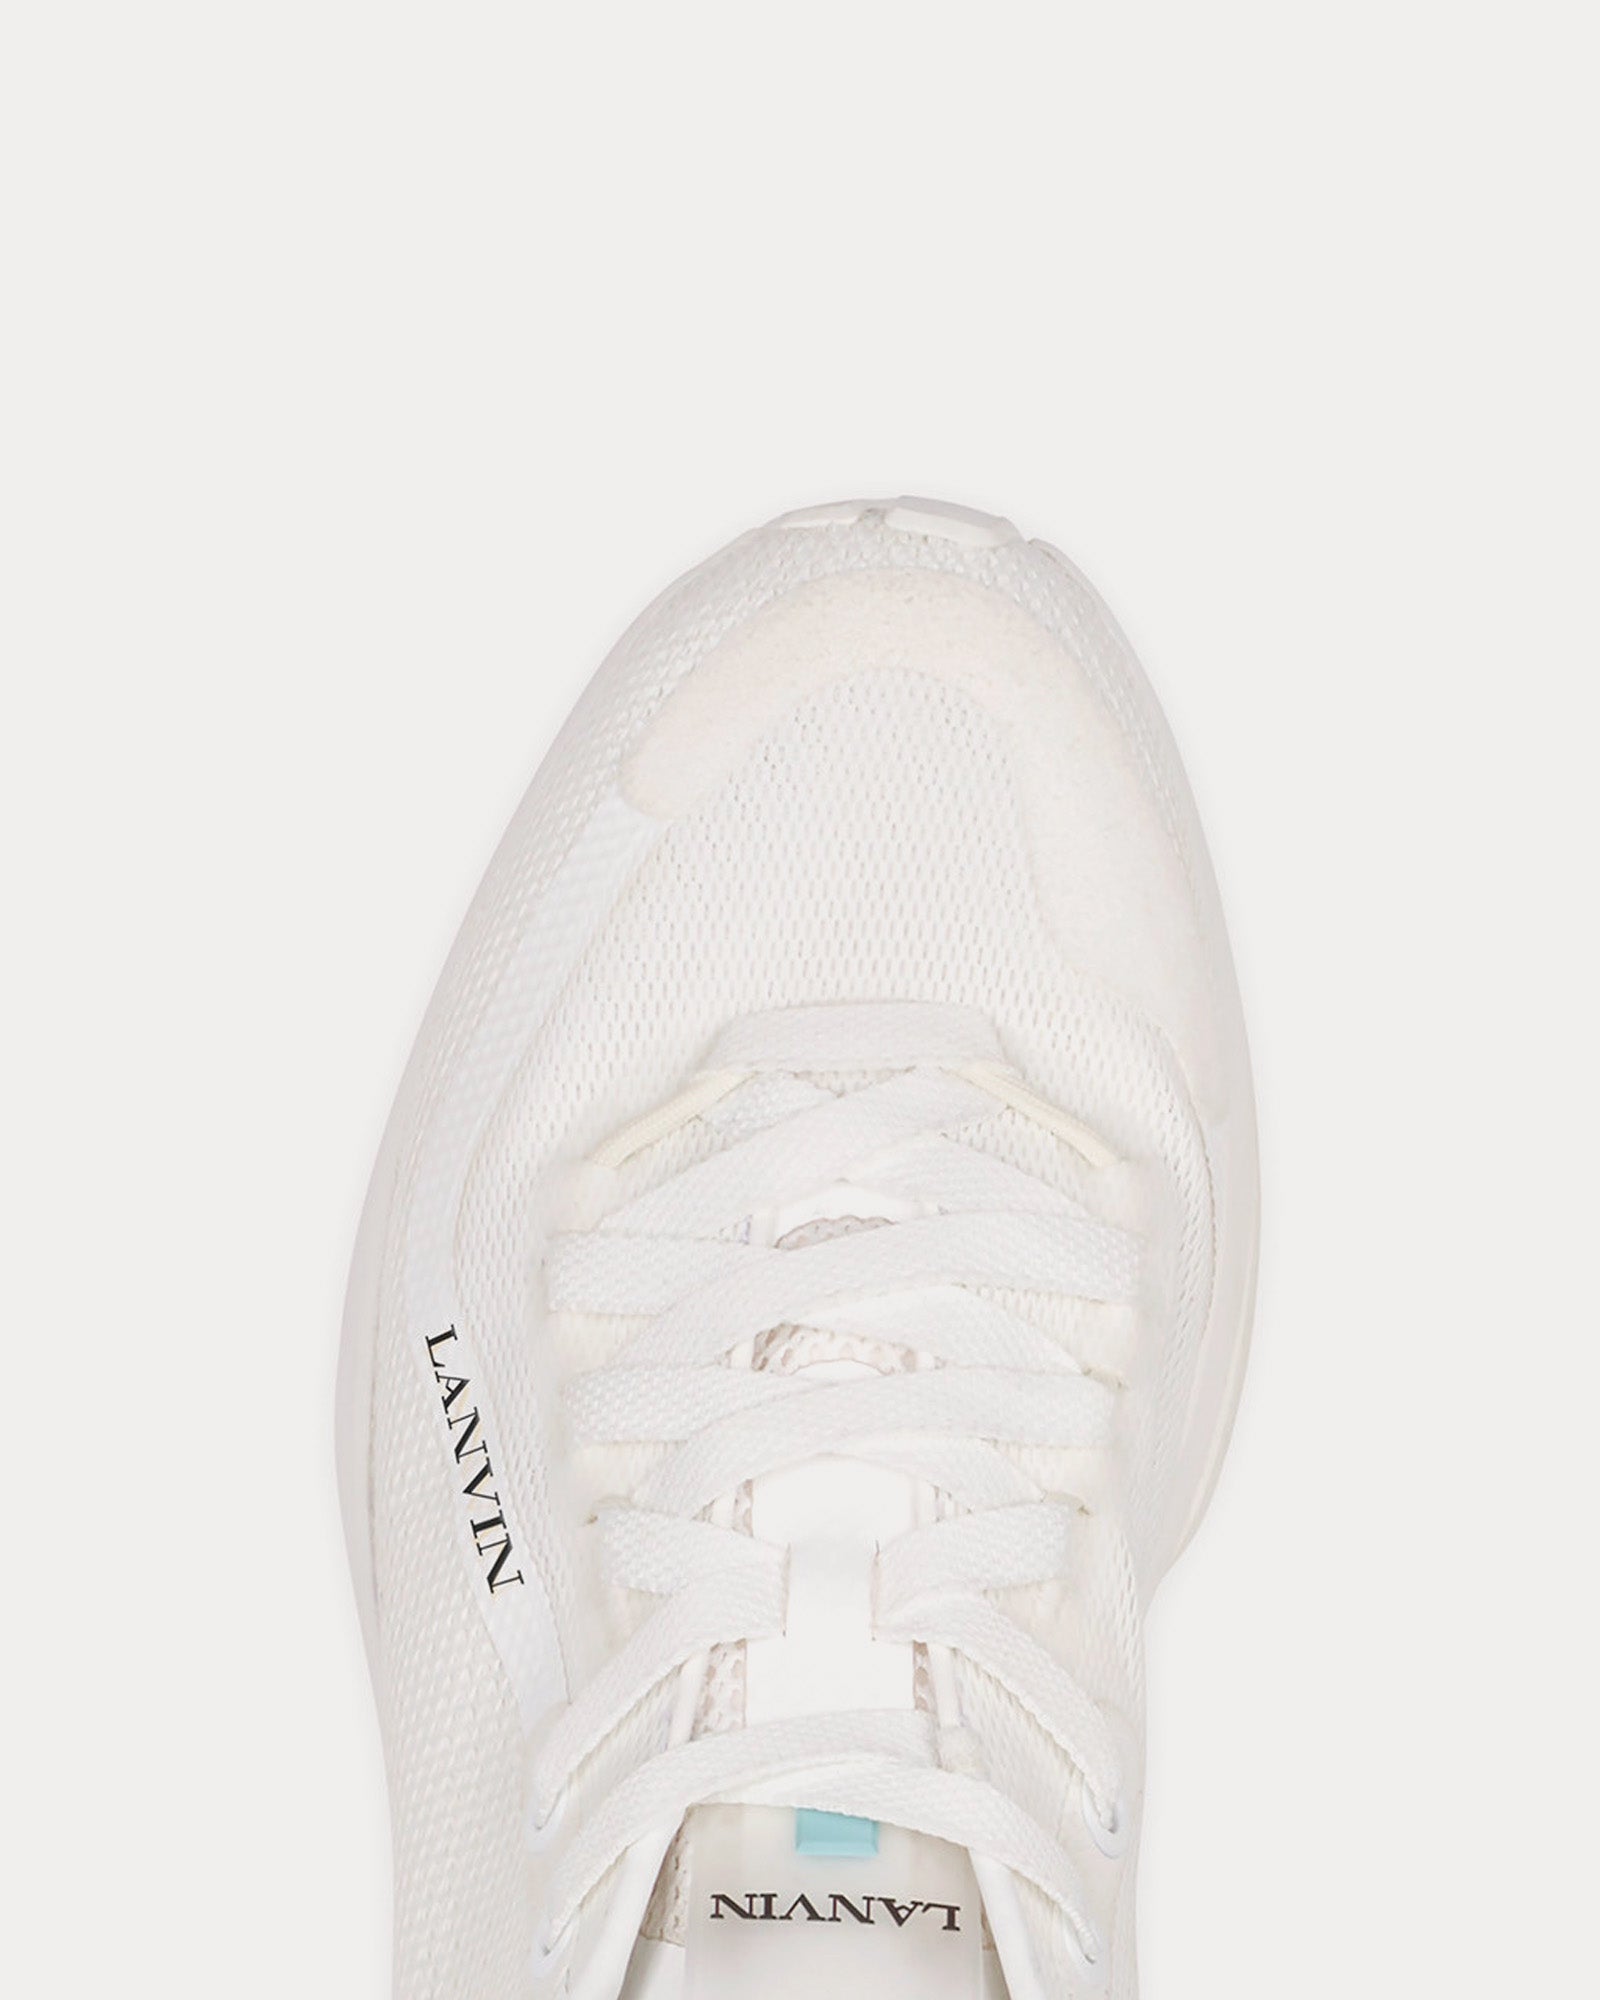 Lanvin - L-I Mesh White / White Low Top Sneakers